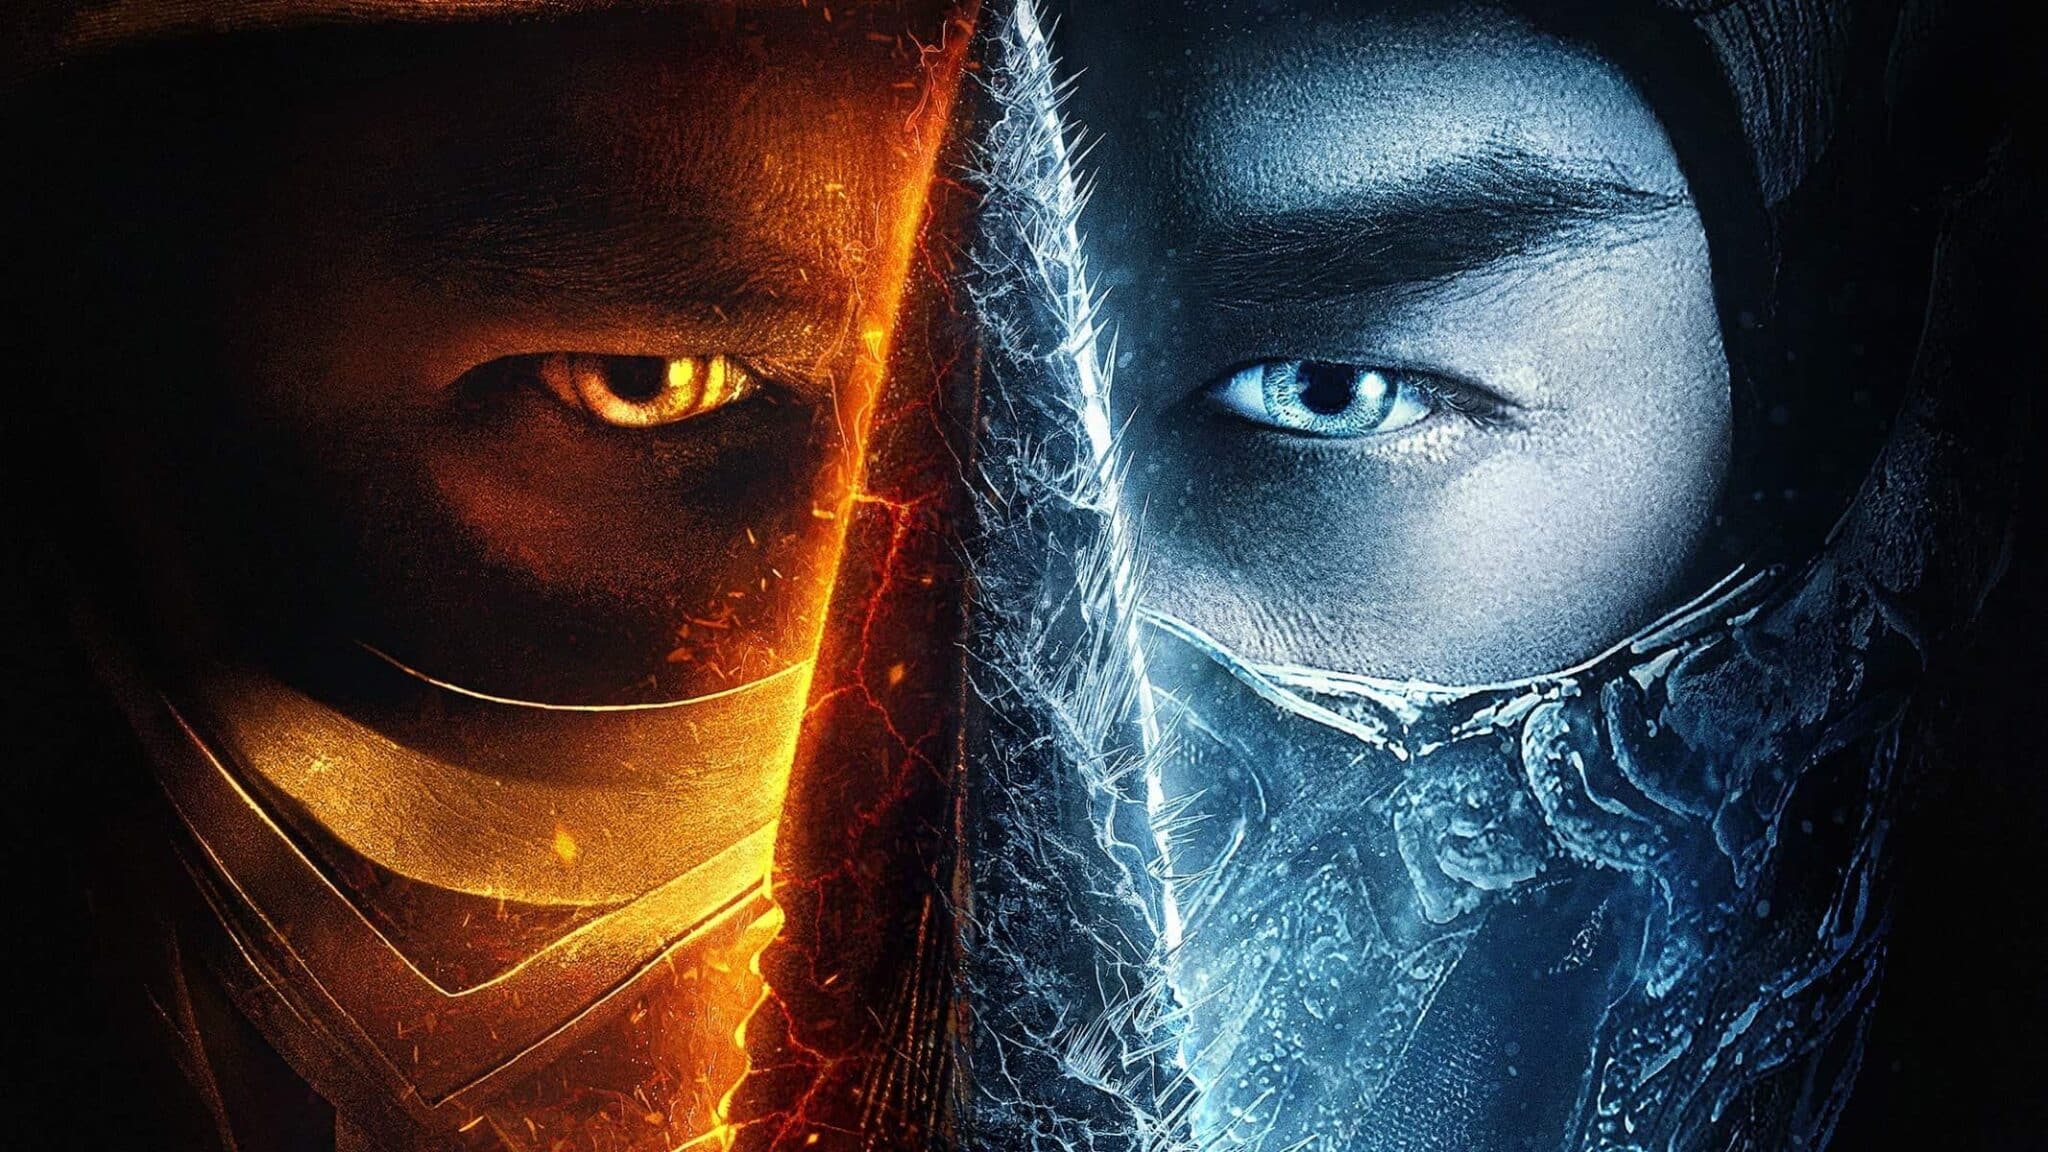 Mortal Kombat (2021 Film) Review – Wizard Dojo